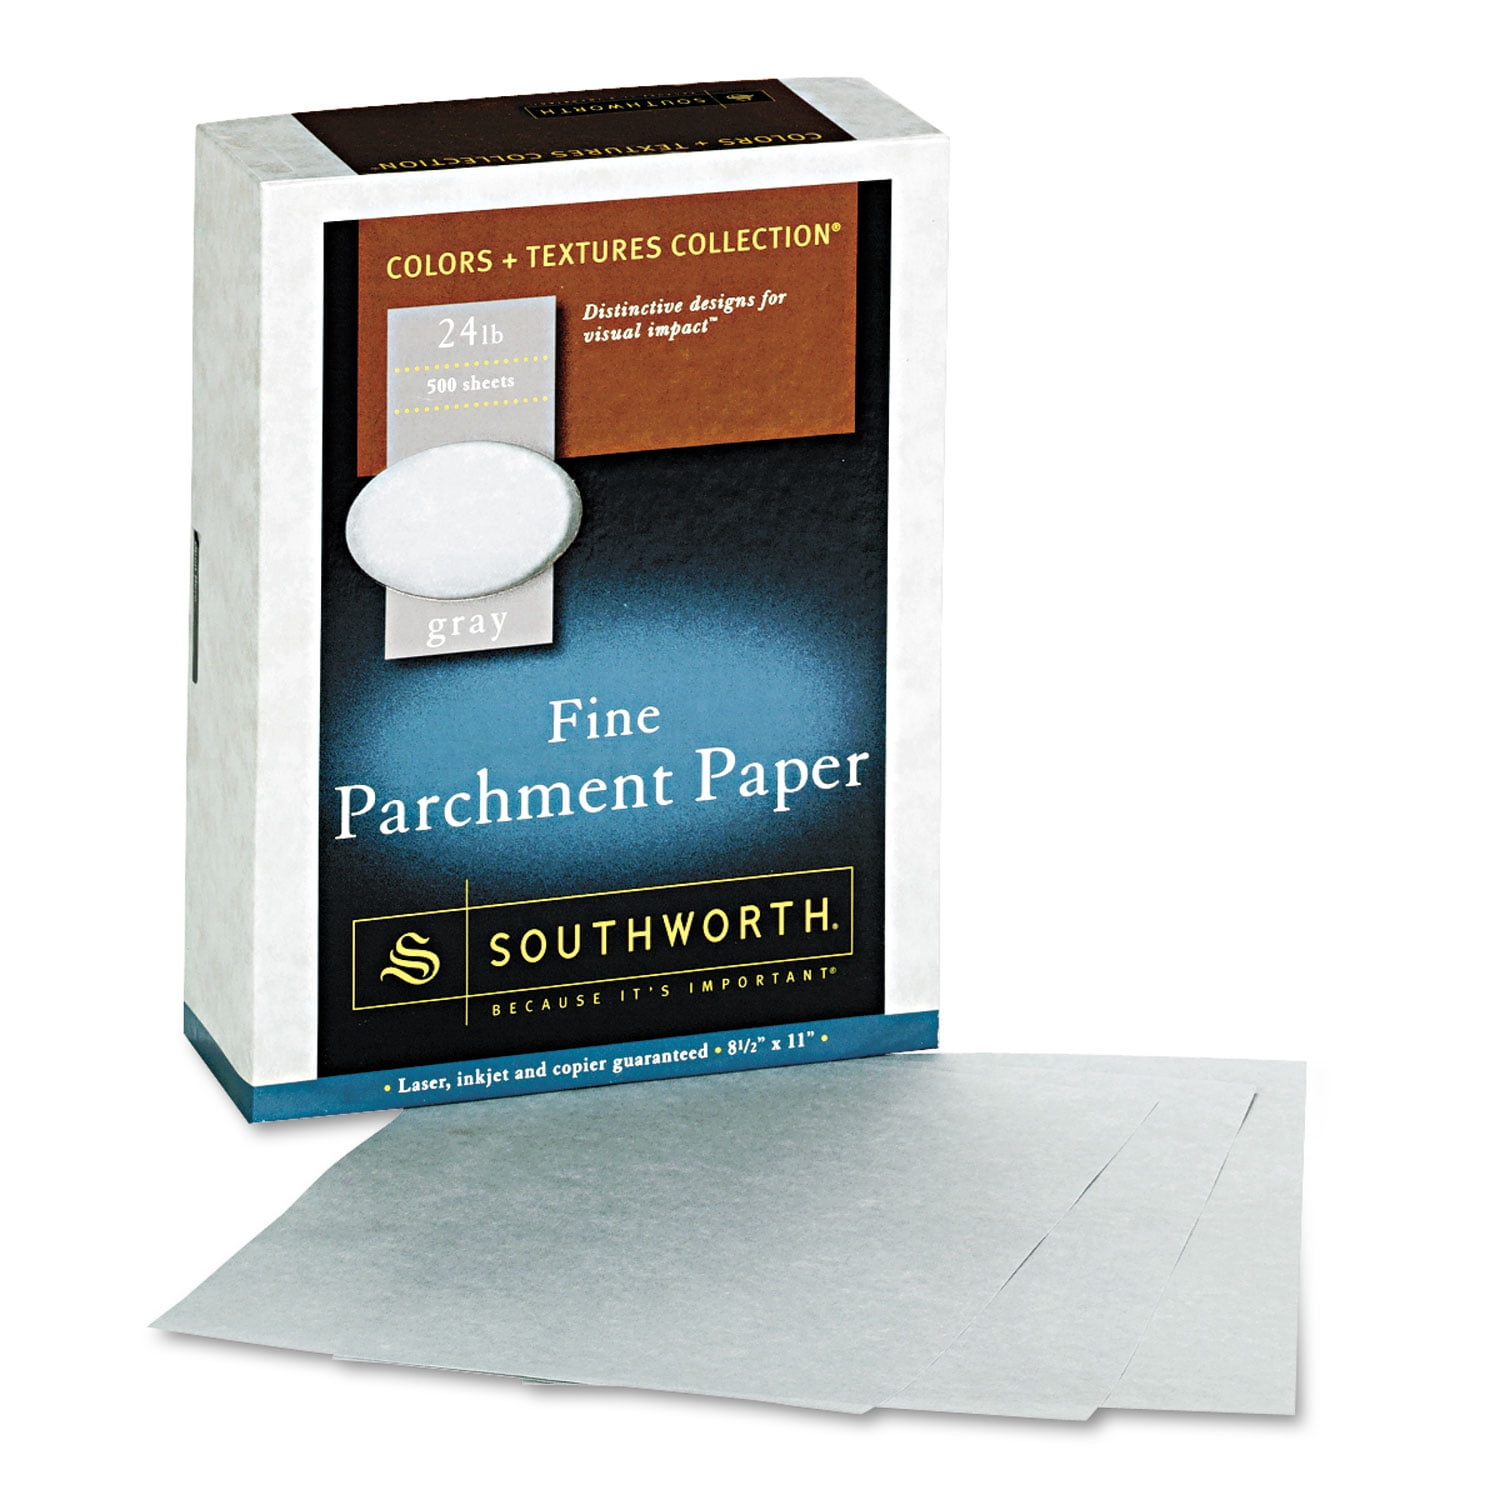 Parchment Paper 25 Square Feet (Case Qty: 24) – Pans Pro